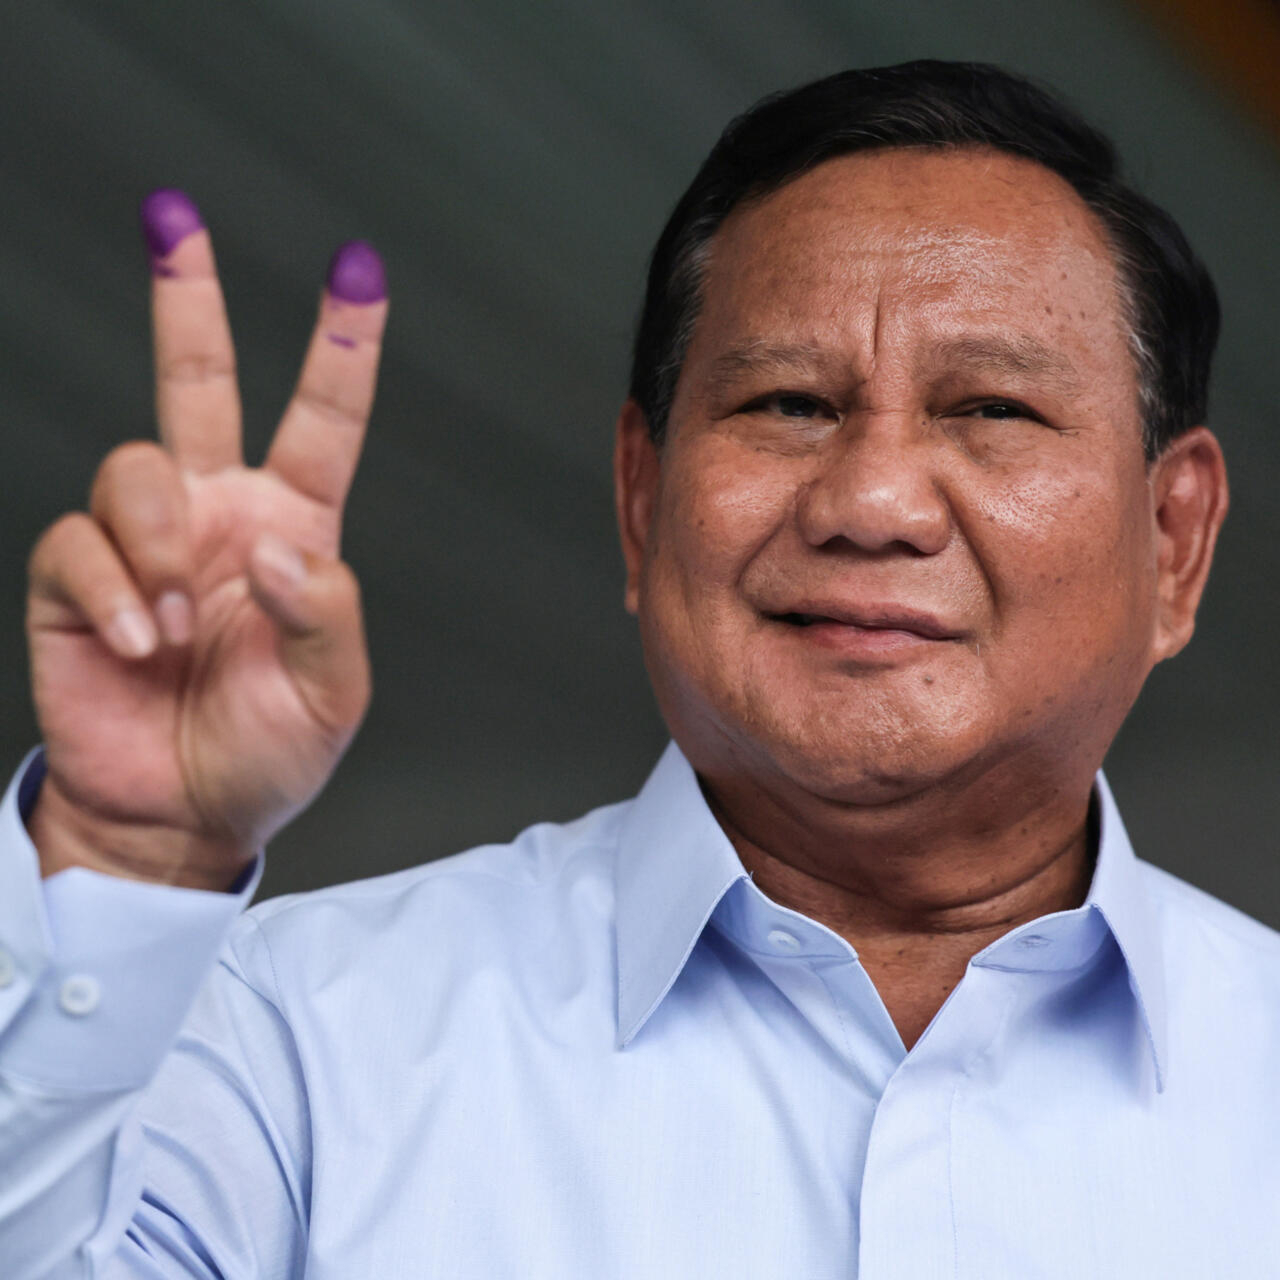  برابوو سوبيانتو يعلن فوزه في انتخابات إندونيسيا الرئاسية قبل الاعلان الرسمي عن نتائجها .